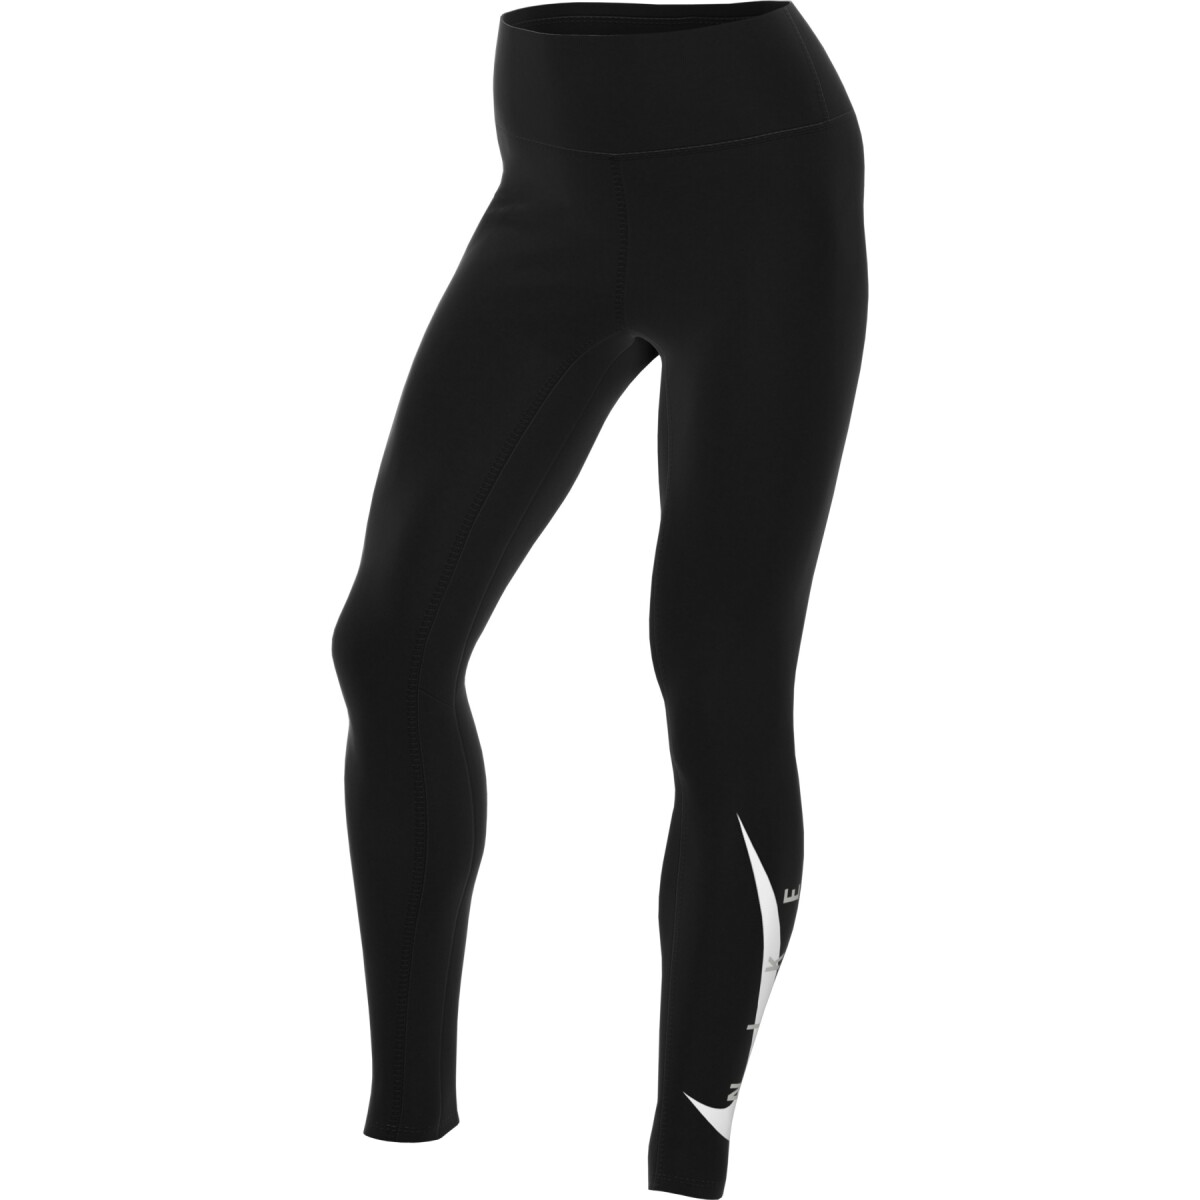 Calza Nike Running dama SWOOSH 7/8 BLACK/(REFLECTIVE SILV) - Color Único 